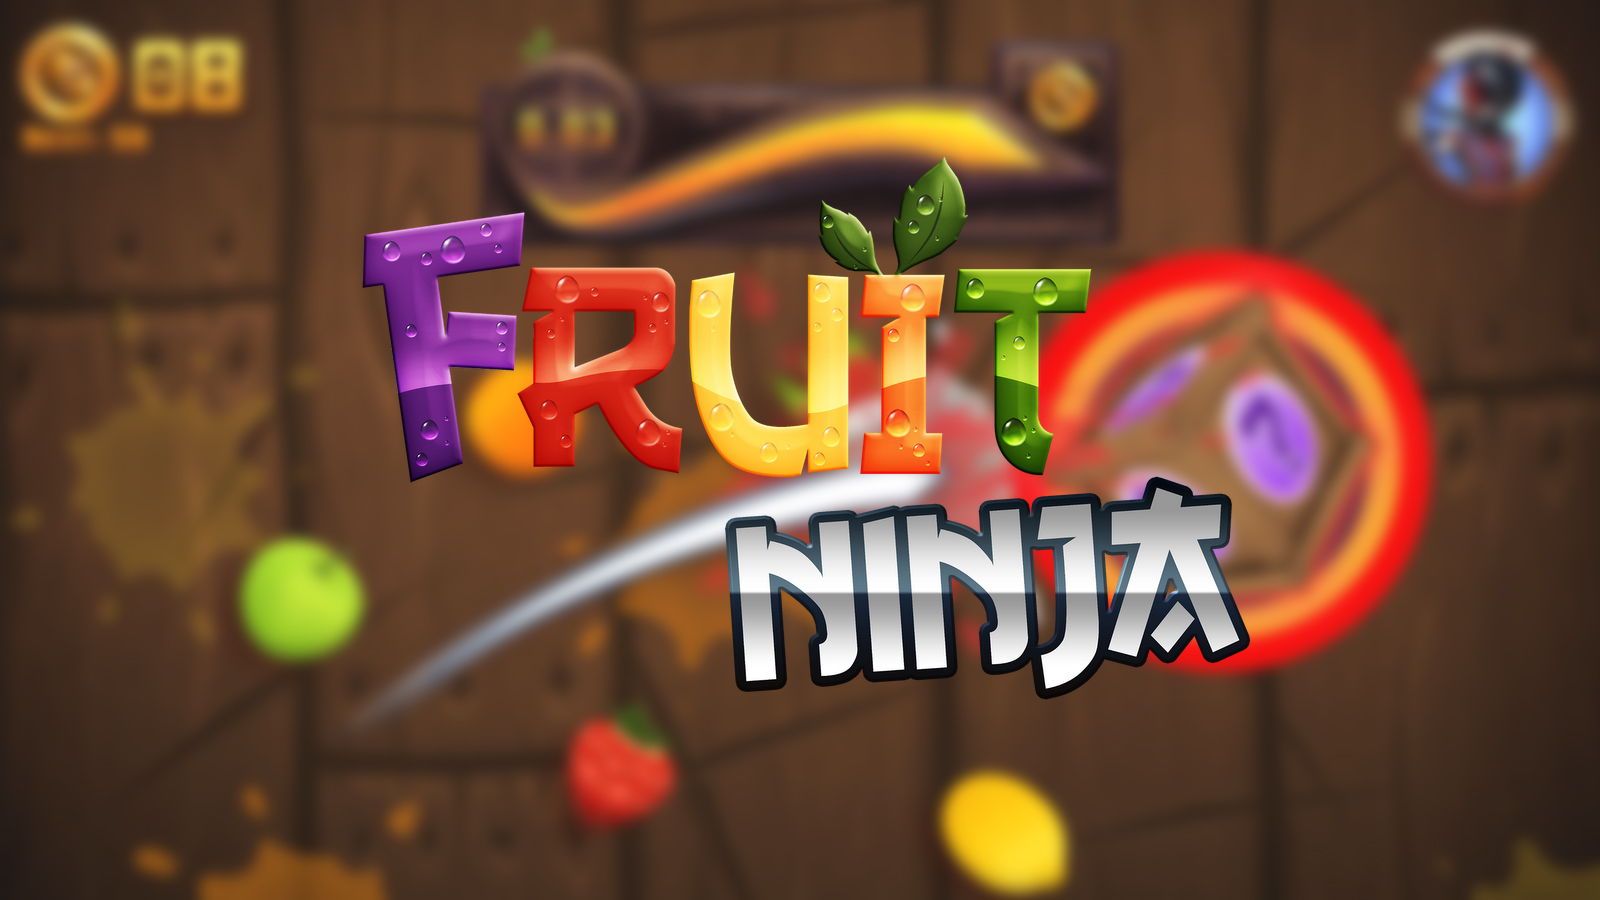 Fruit ninja - скачать бесплатно, freemyapps, общий аккаунт